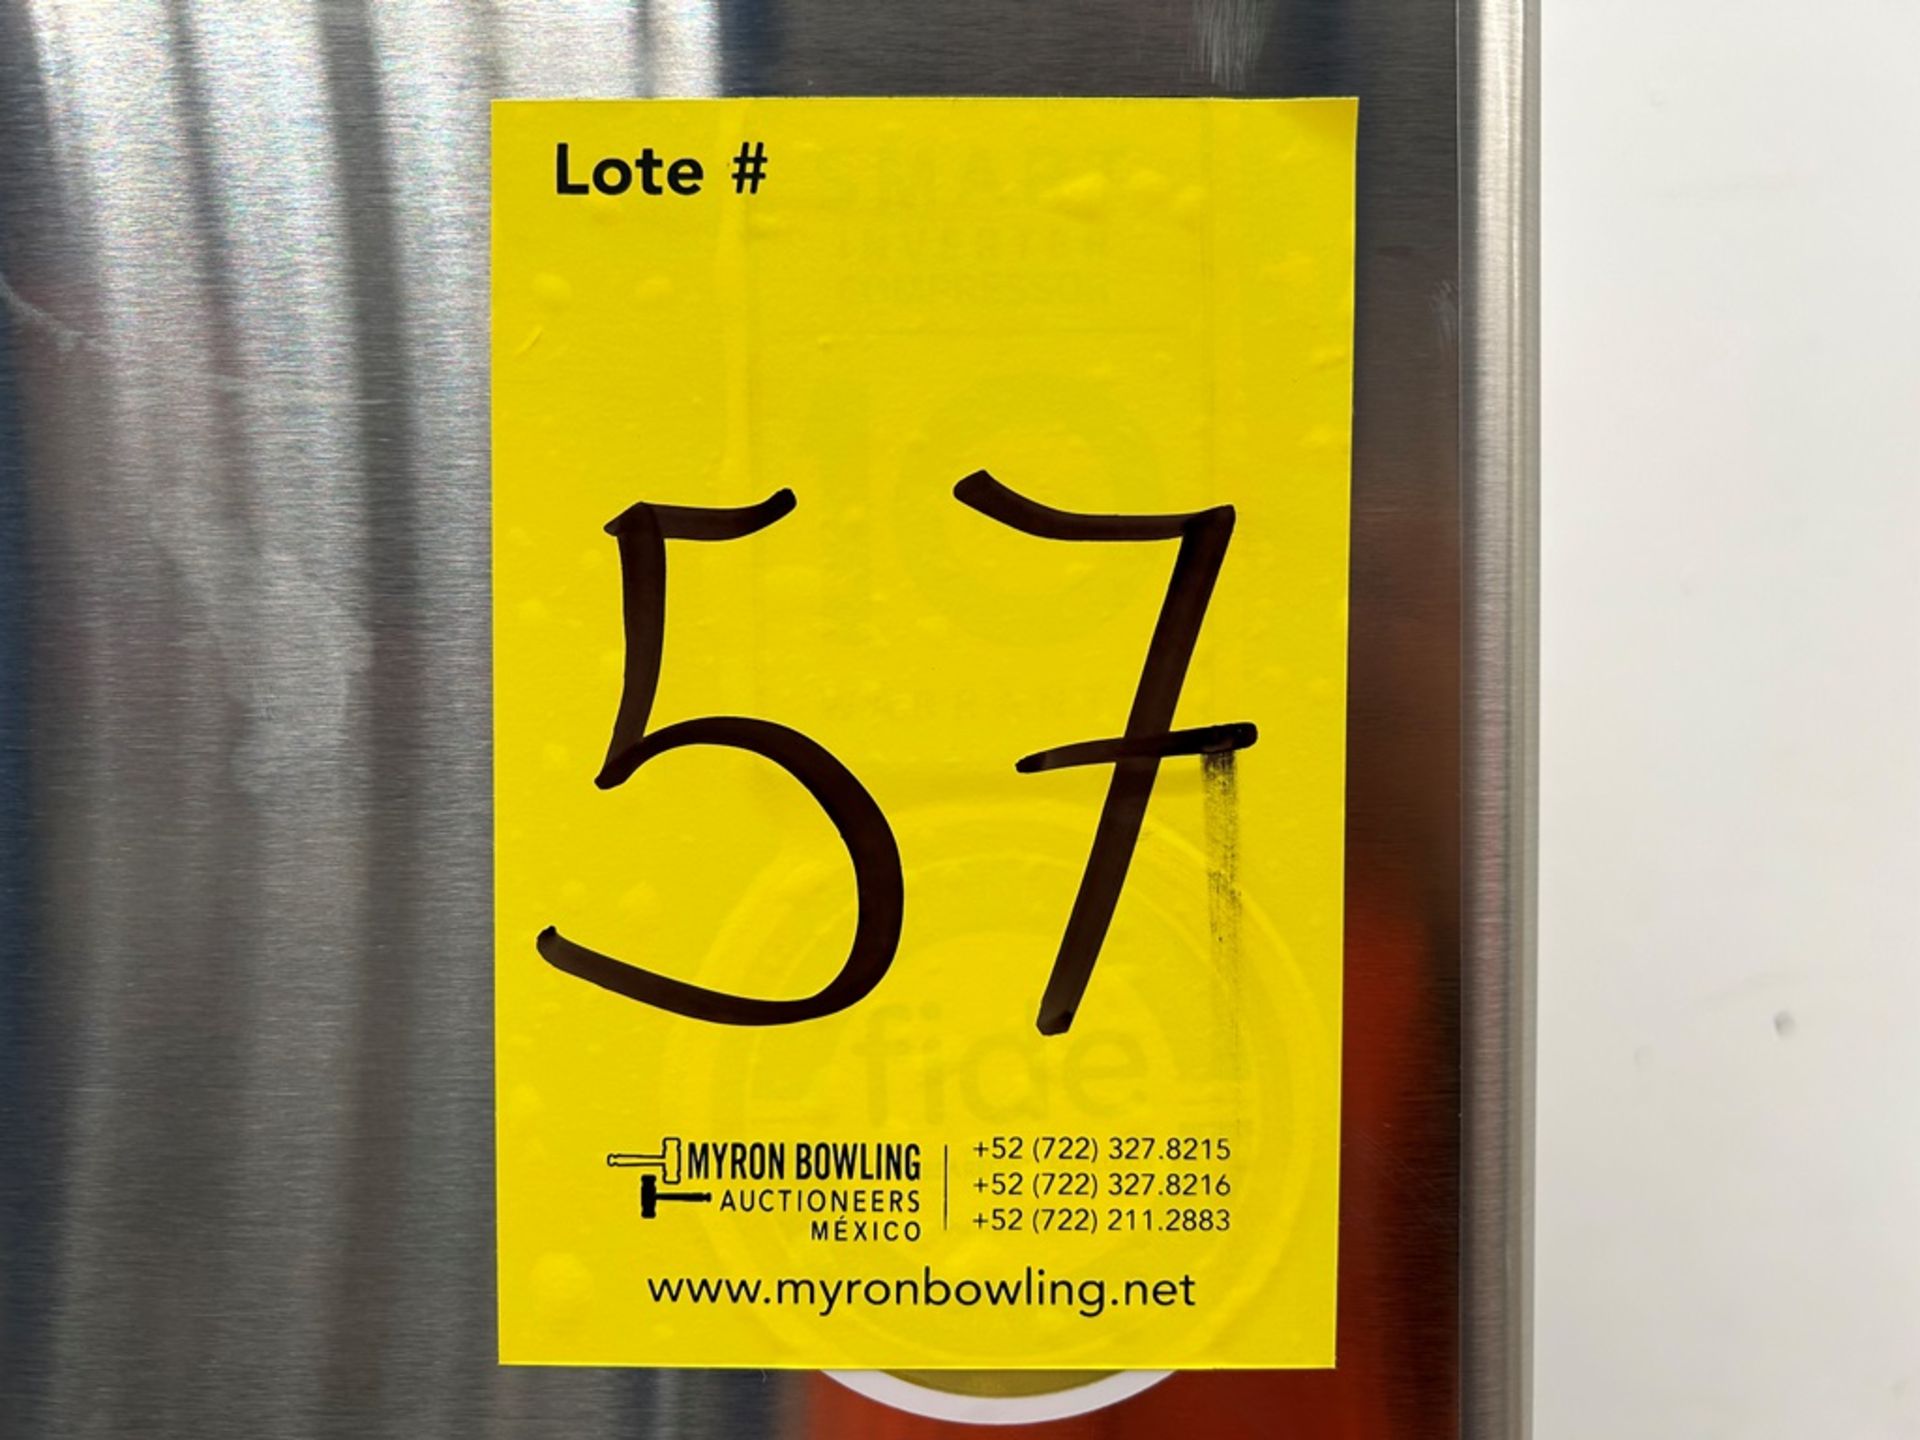 (NUEVO) Refrigerador Marca LG, Modelo LT57BPSX, Serie 2D689, Color GRIS - Bild 7 aus 7